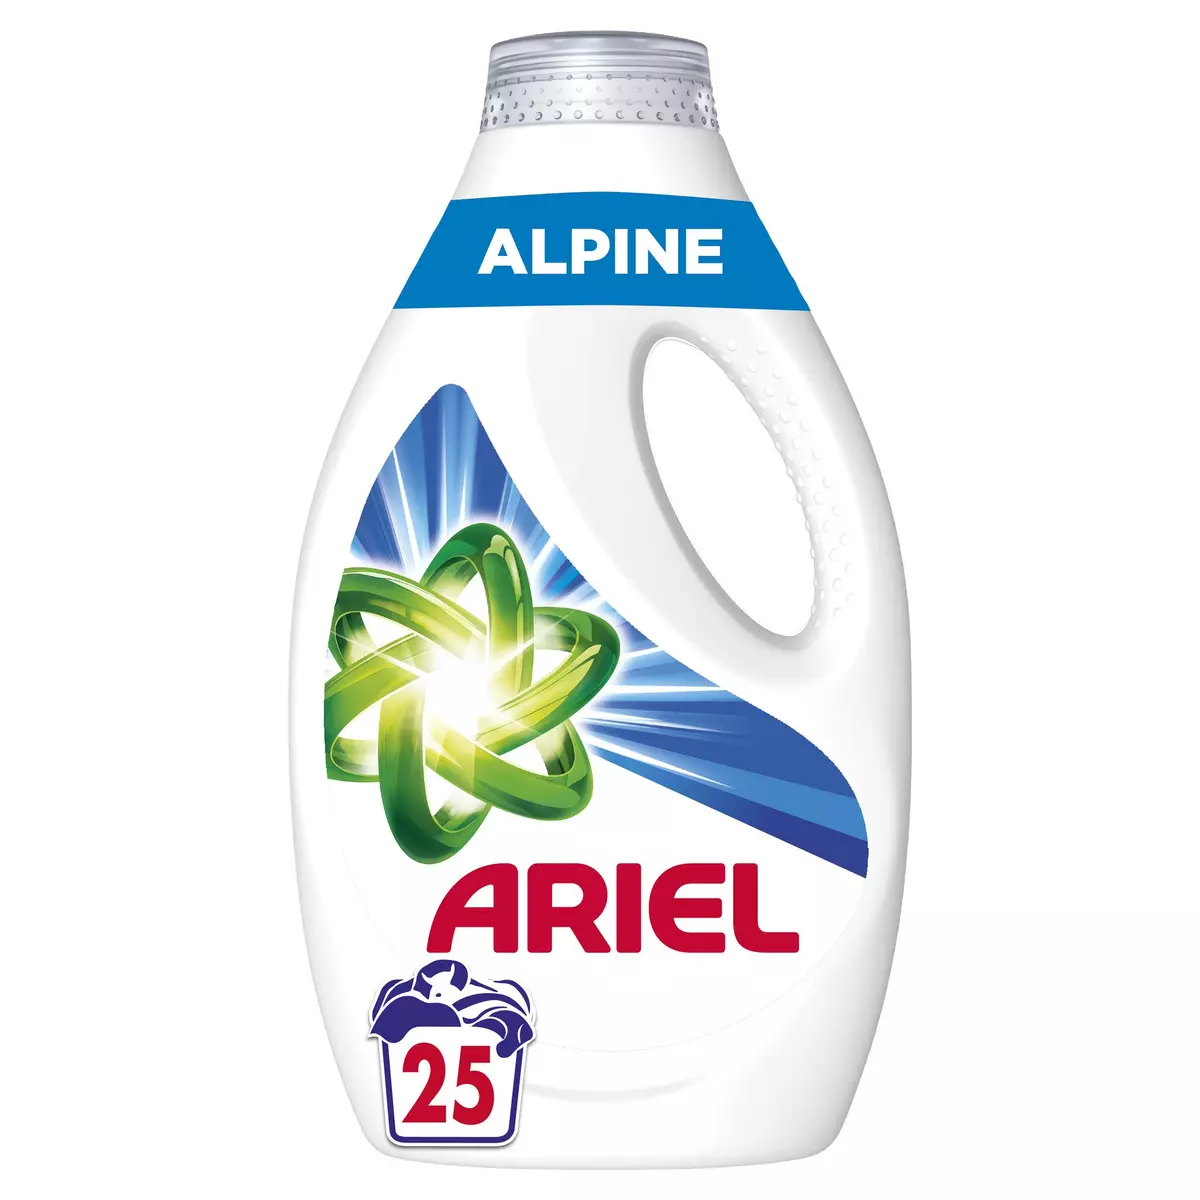 ARIEL Power Lessive liquide alpine 25 lavages 1.25l